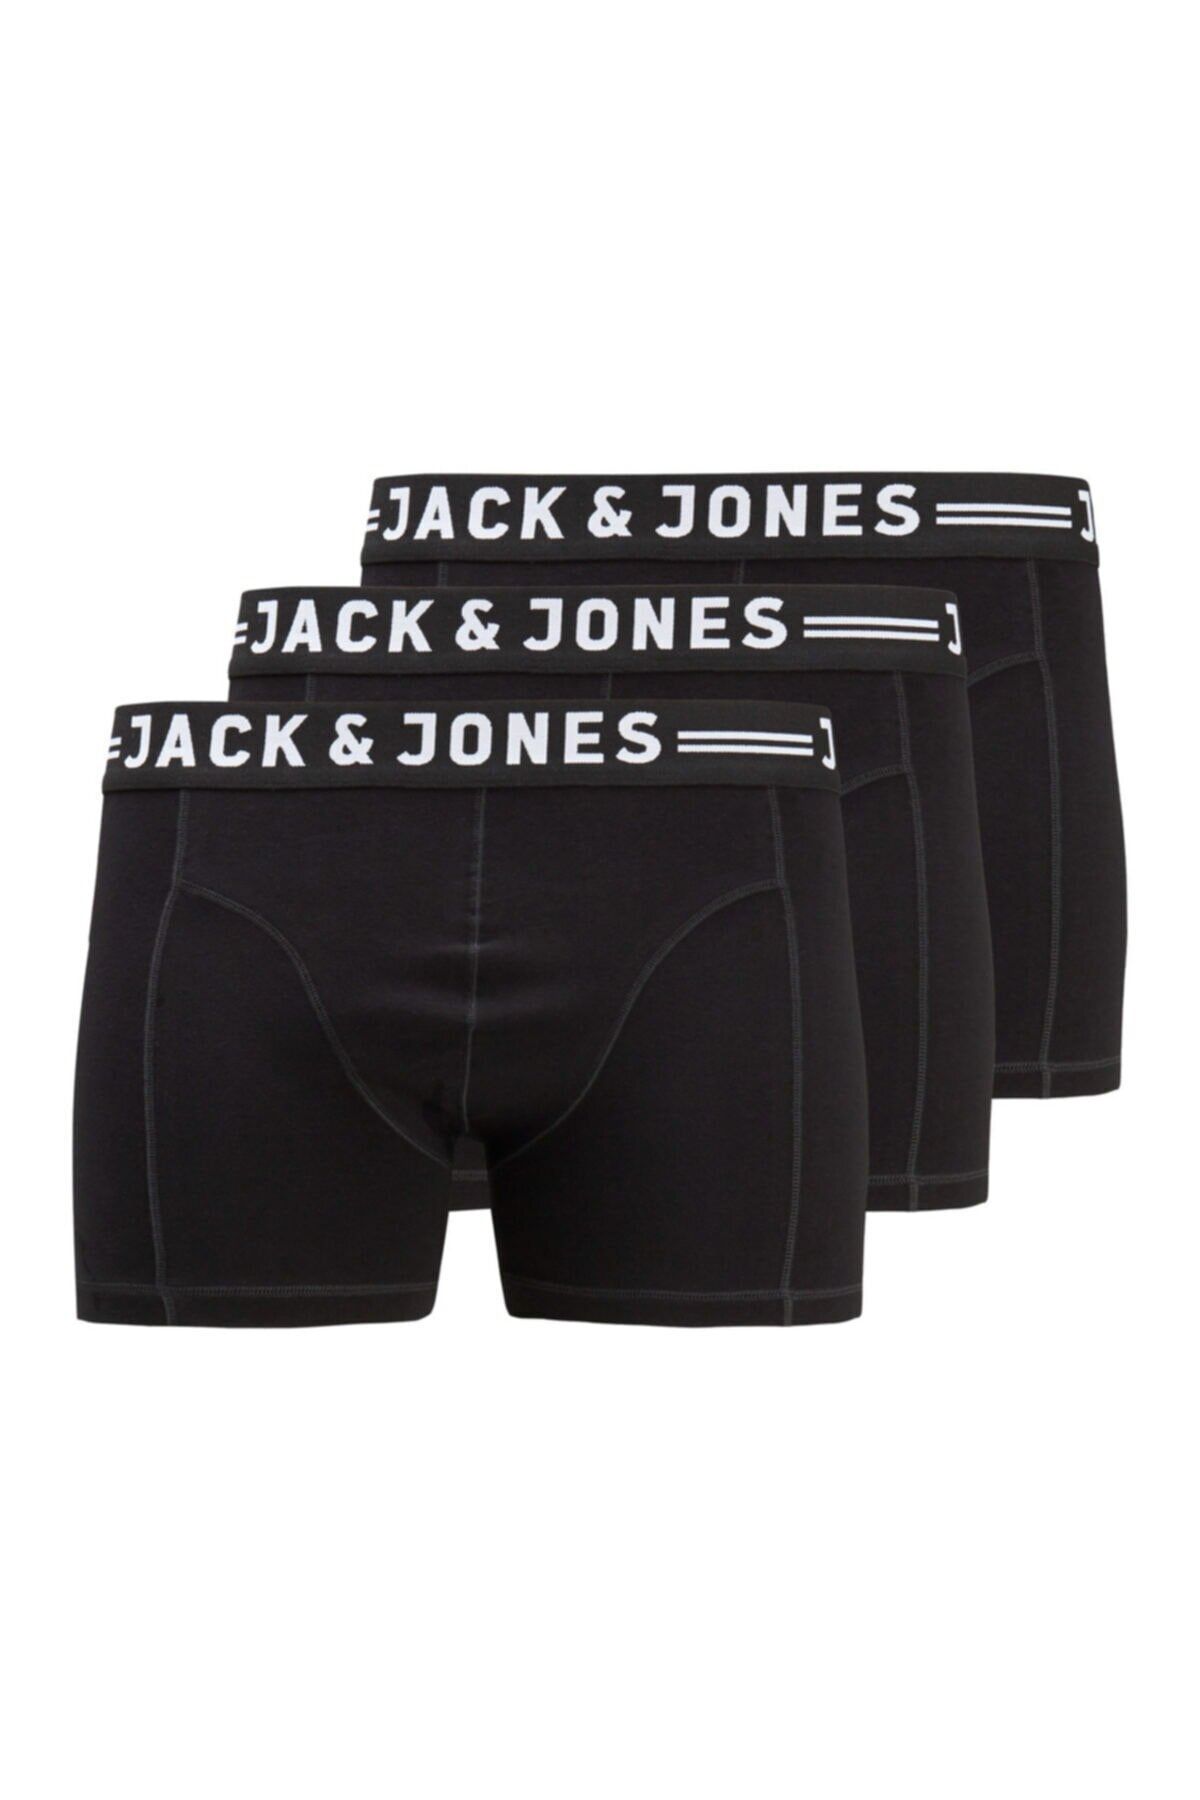 Jack & Jones Jack Jones Sense Trunks 3-pack Noos Pls Erkek Siyah Boxer 12147591-02